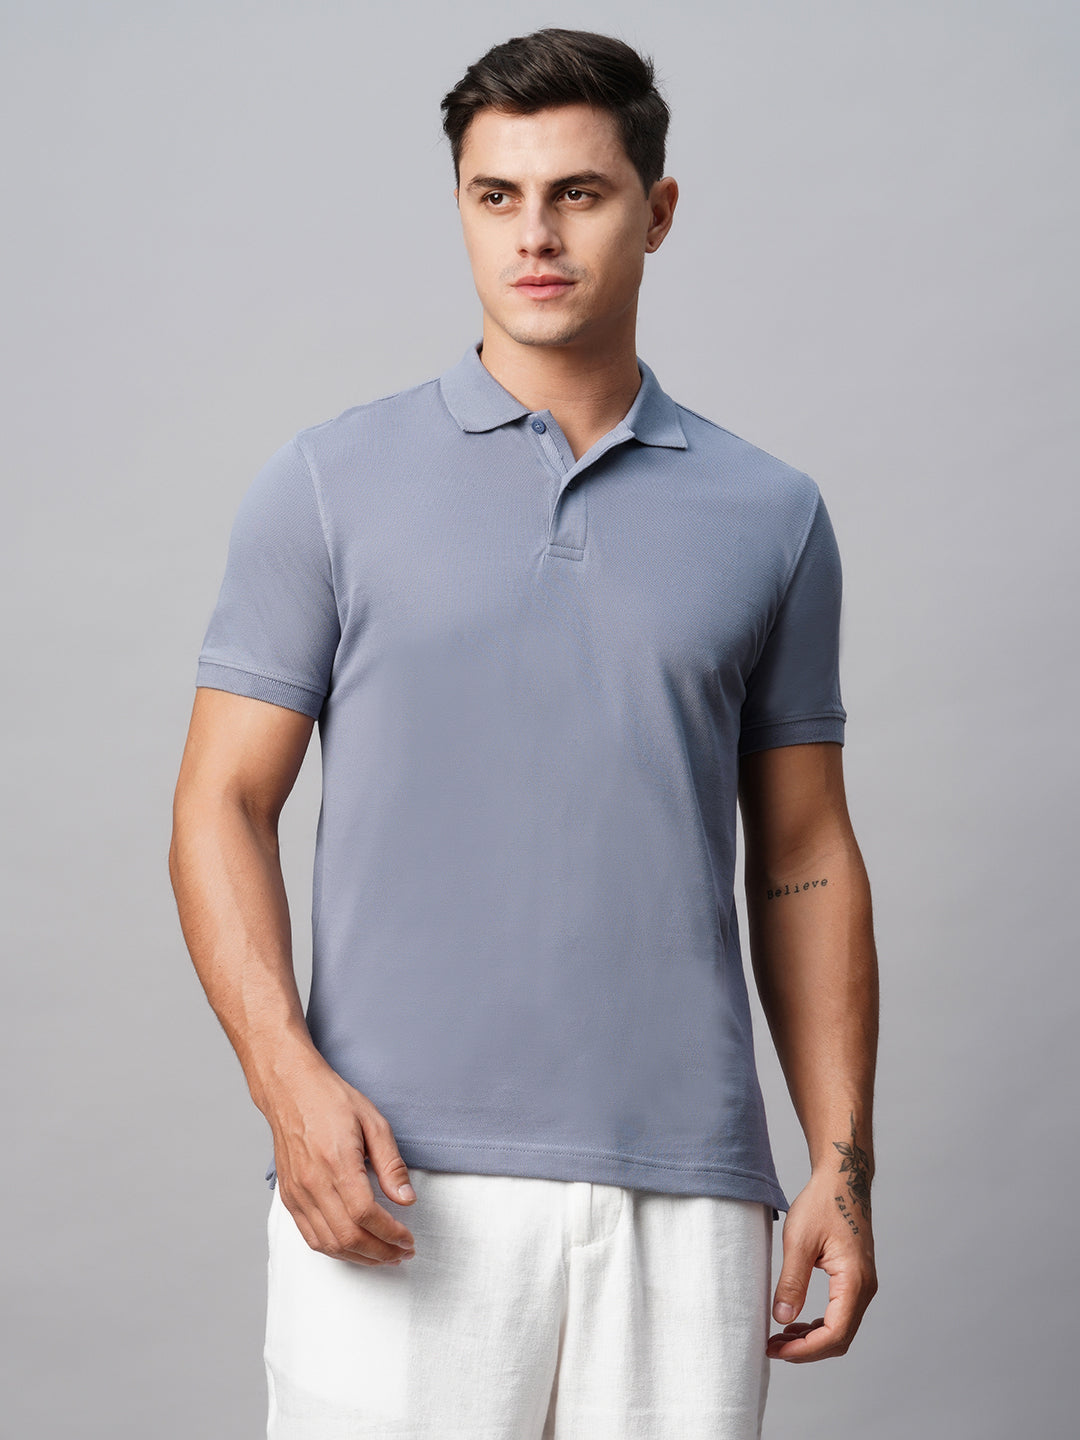 Men's Polo 100% Cotton Violet Regular Fit